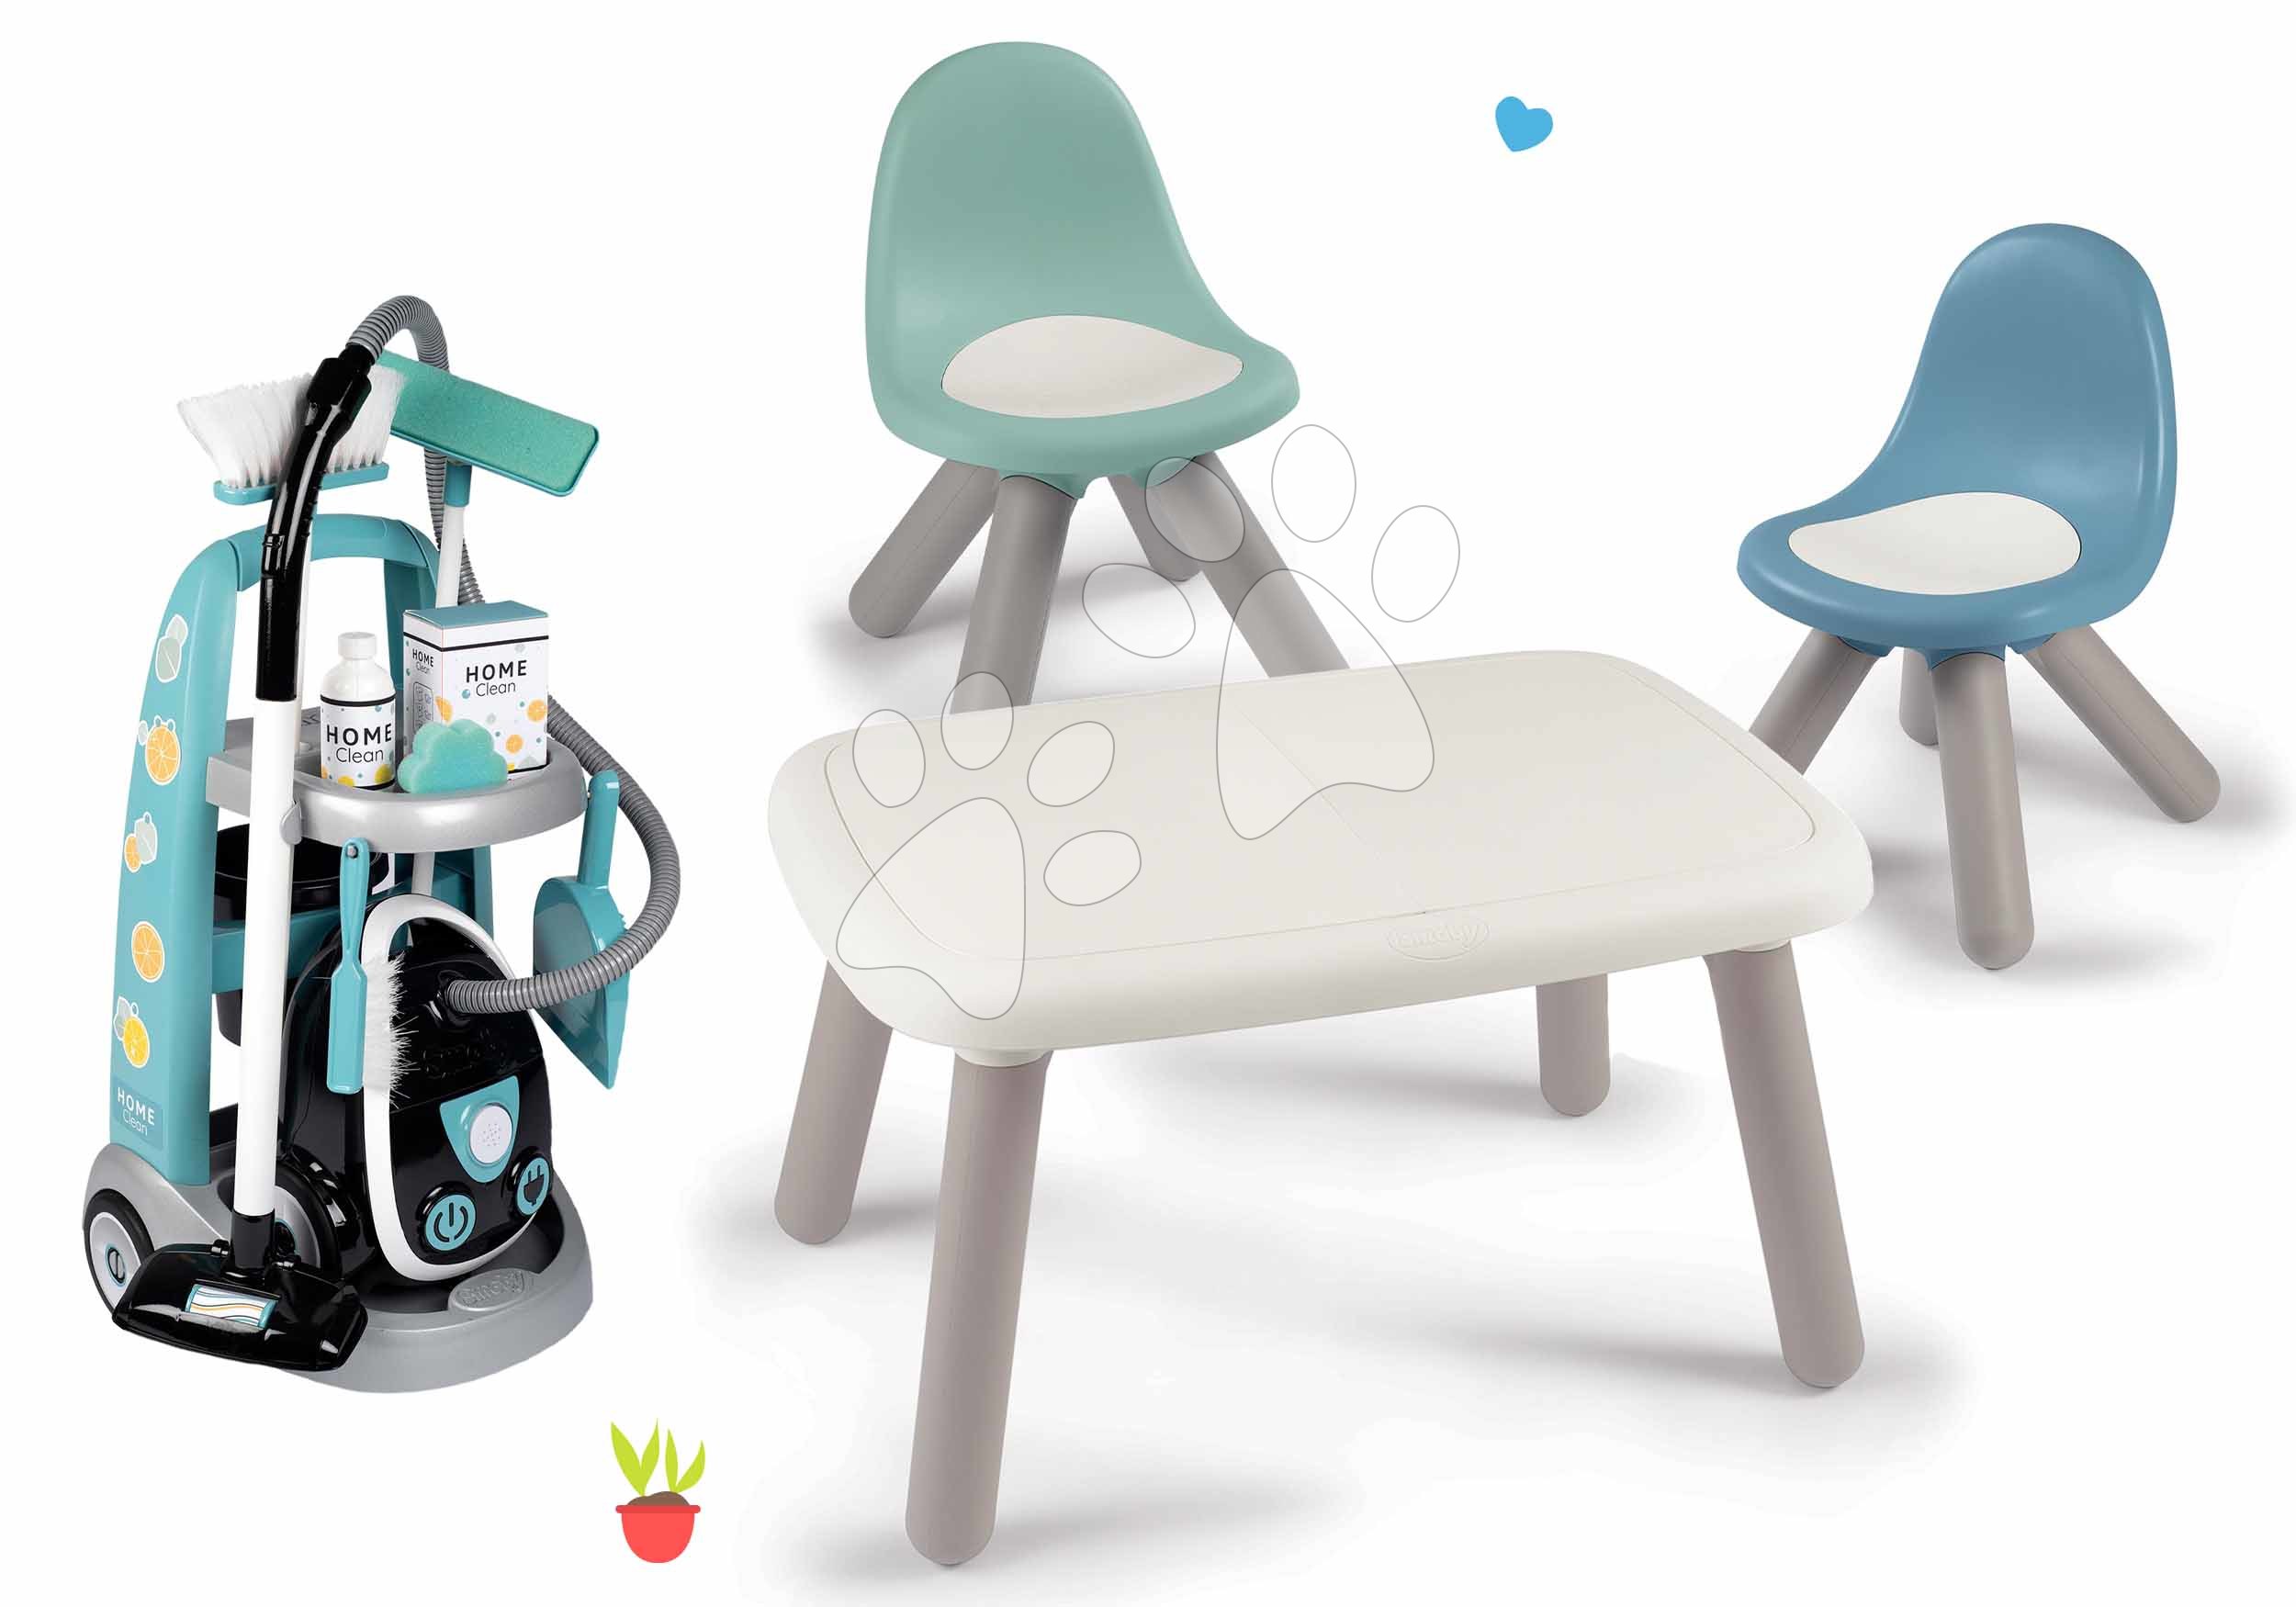 Igre v gospodinjstvu - Komplet čistilni voziček z elektronskim sesalnikom Cleaning Trolley Vacuum Cleaner Smoby in miza KidTable z 2 stolčkoma KidChair